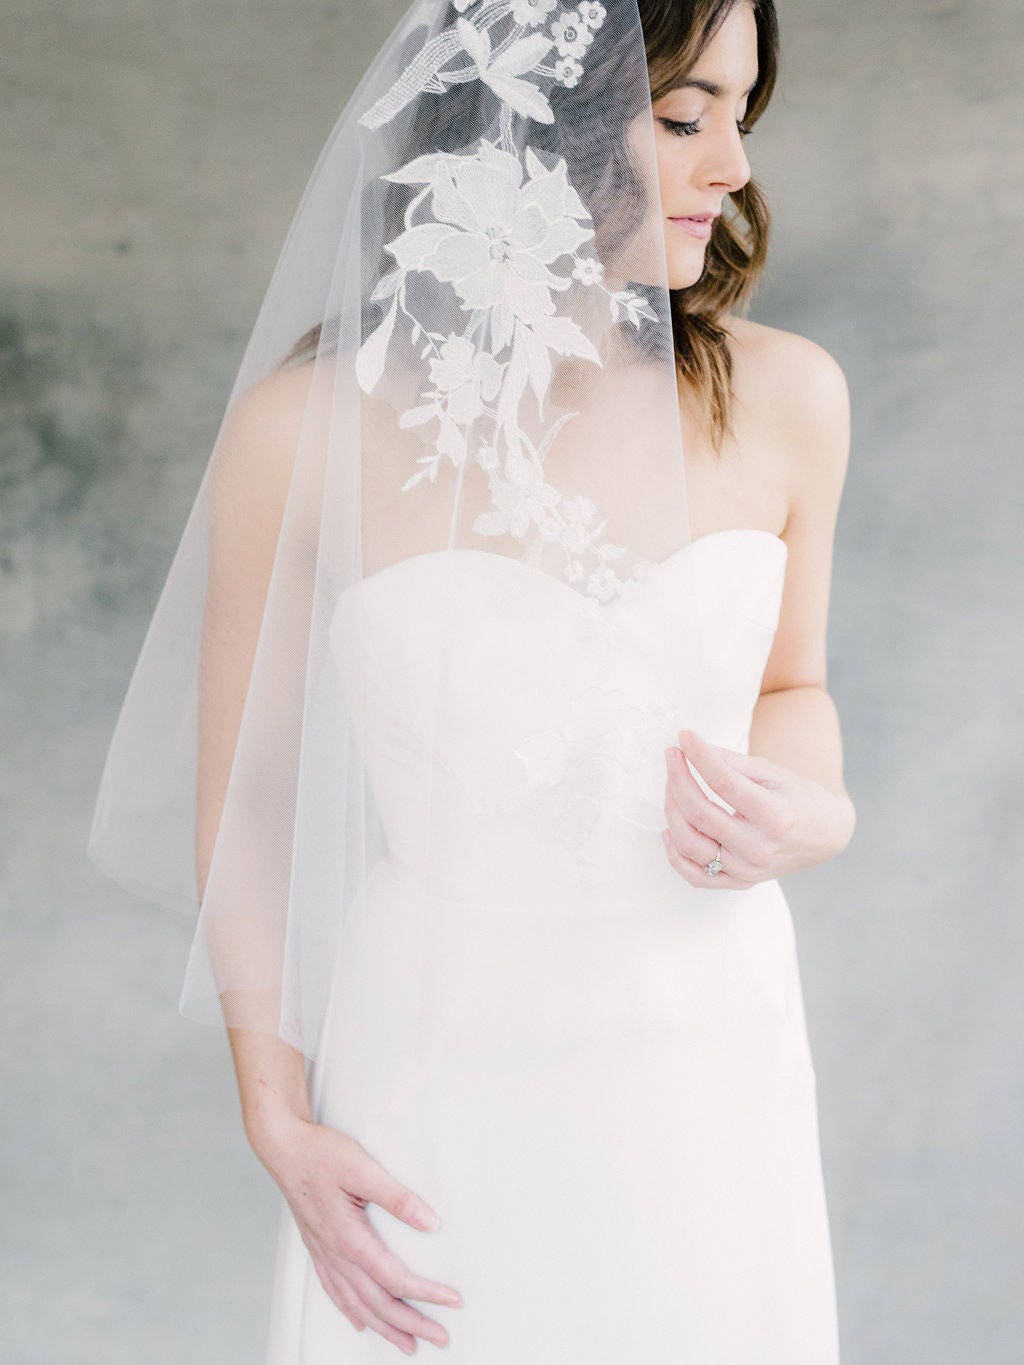 Bridal Veil Wedding Veil Lace Veil Drop Veil Mantilla | Etsy